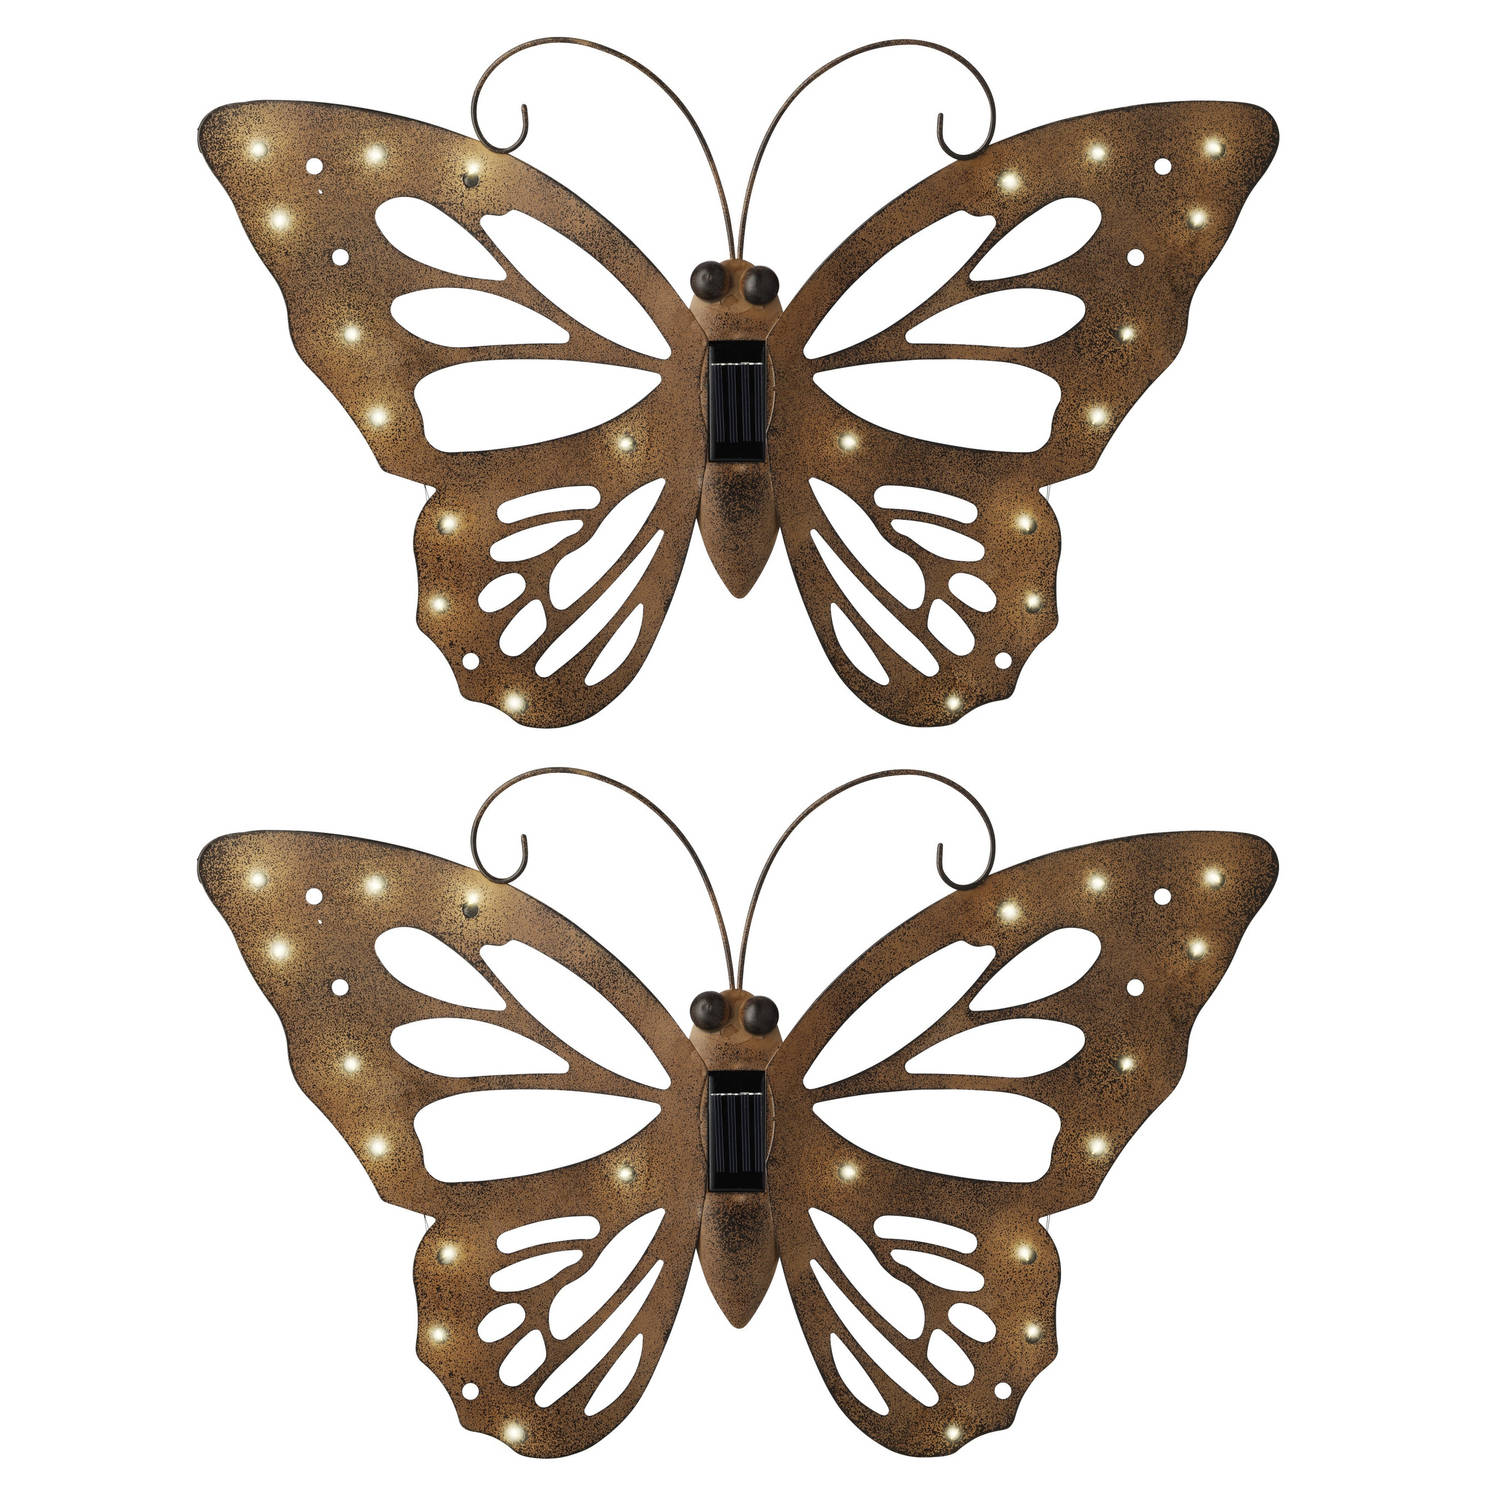 IJzeren decoratie vlinder met solar verlichting x 35 cm - Tuinbeelden | Blokker